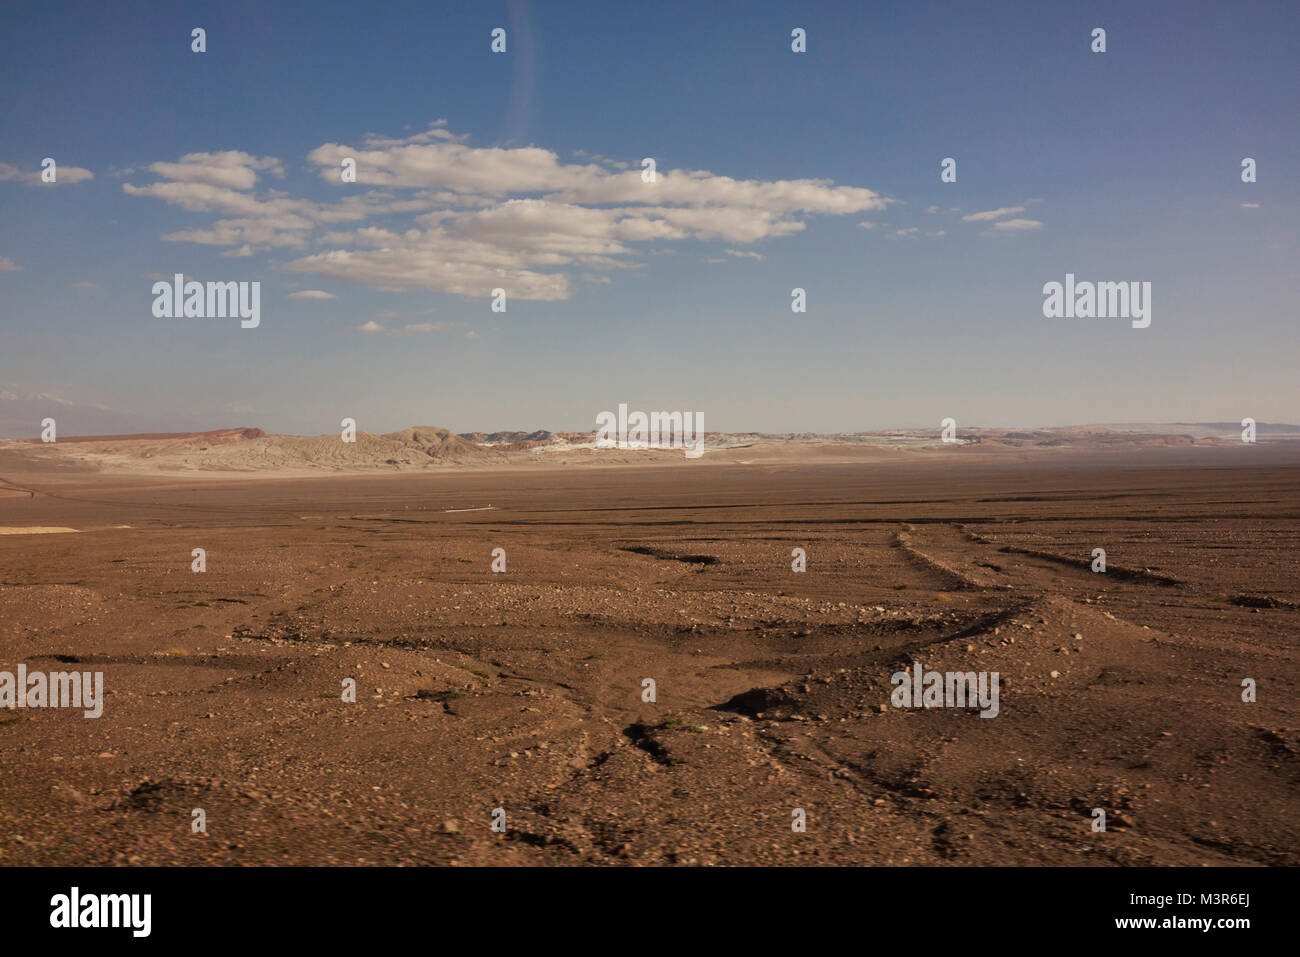 Panorama of the arid terrain of the Atacama Desert in Chile. Stock Photo